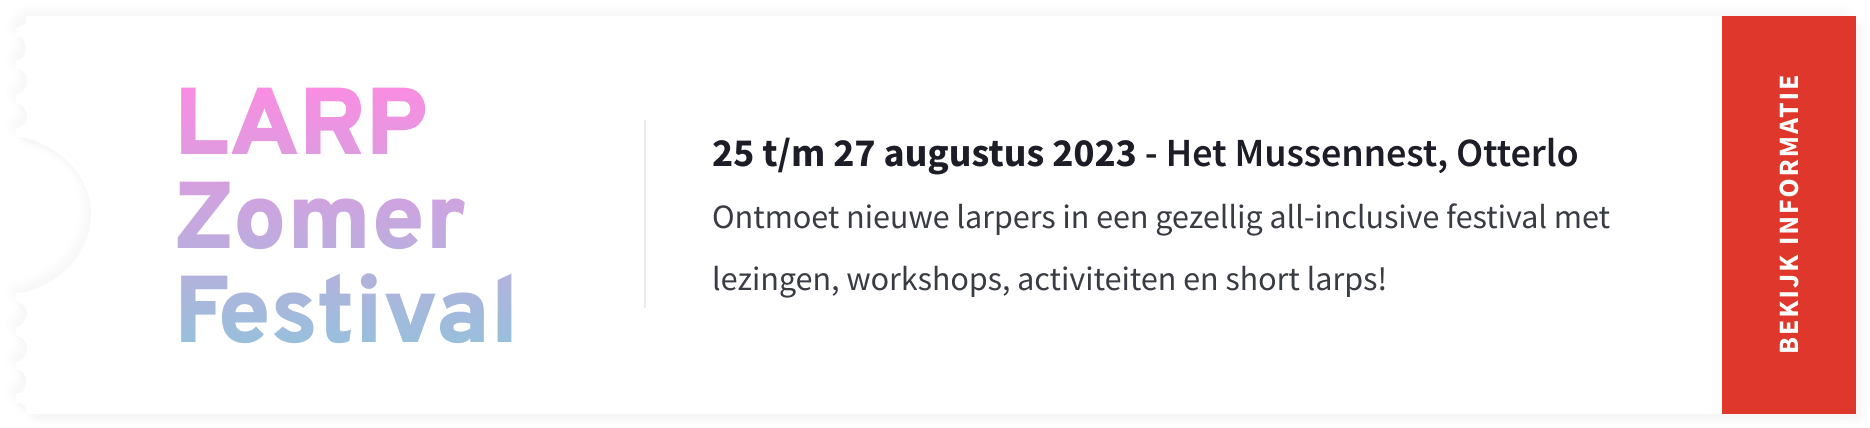 LARP Zomer Festival 2023 op 25 t/m 27 augustus 2023 op het Mussennest